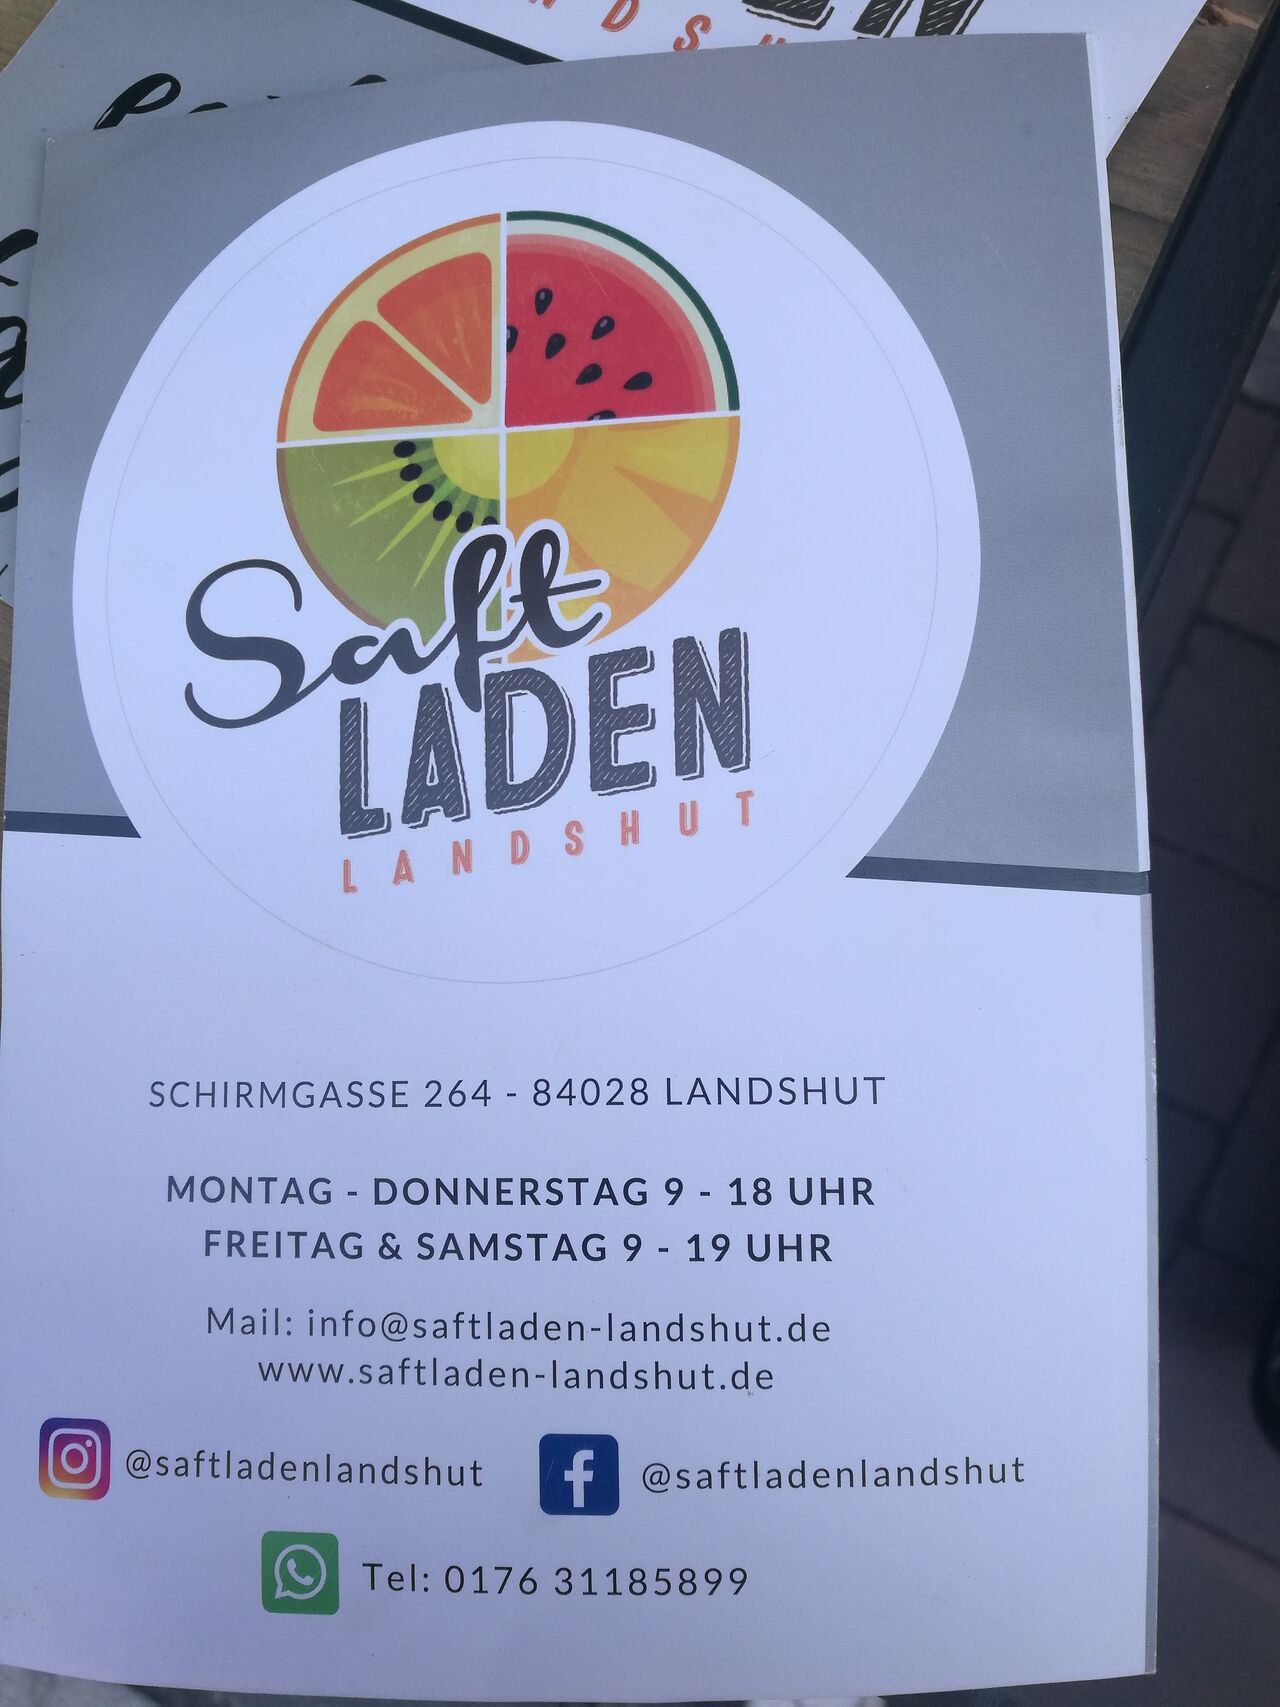 A photo of Saftladen